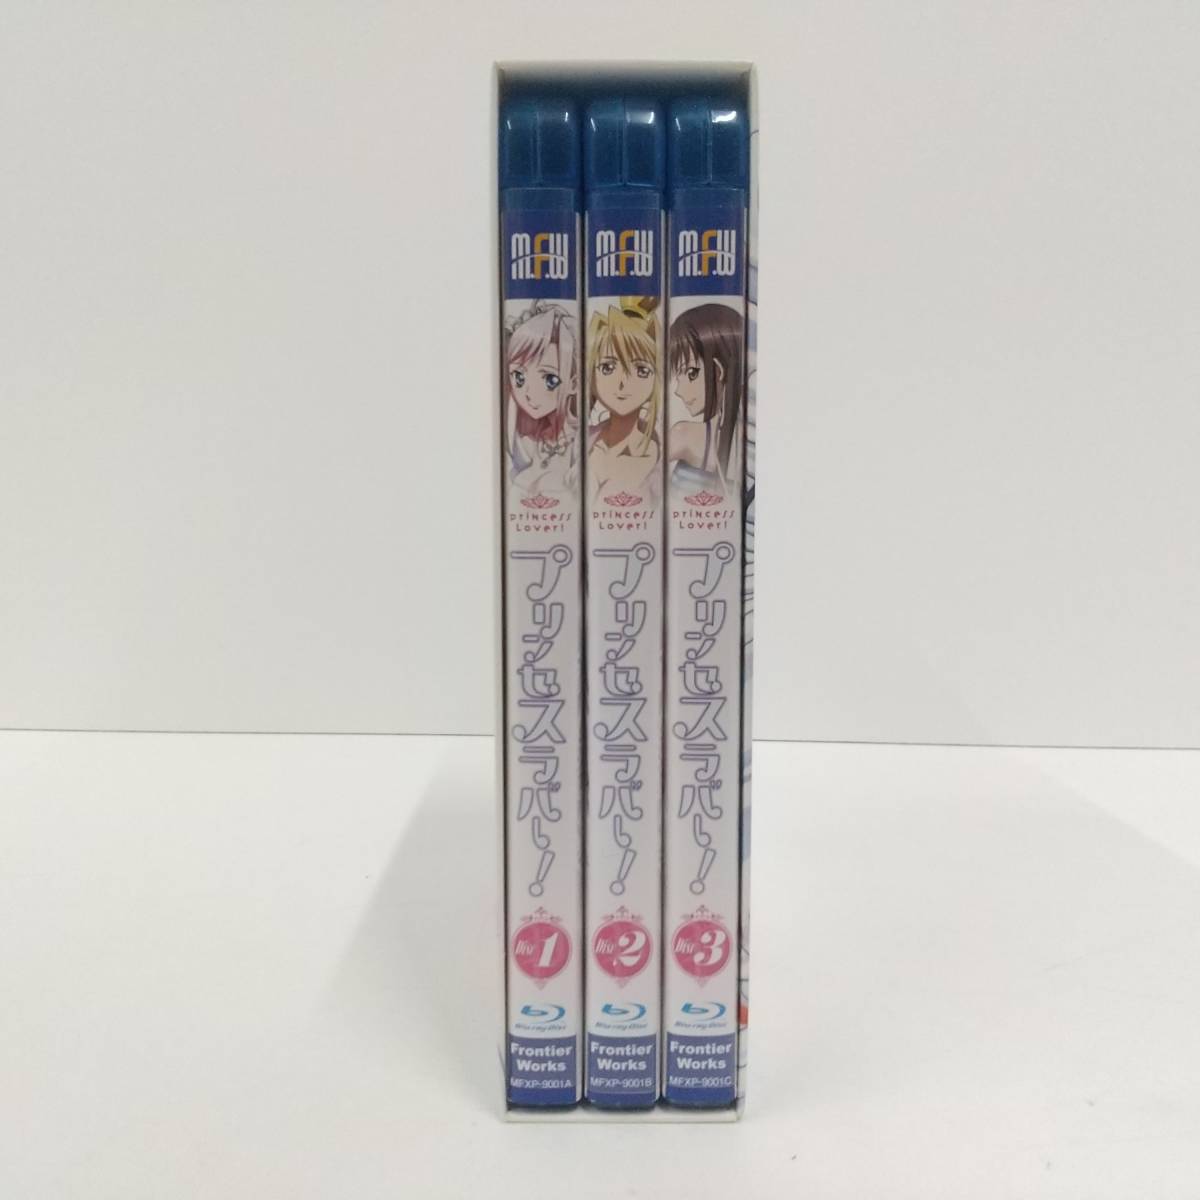 1246【Blu-ray BOX 全3枚組】プリンセスラバー!_画像3